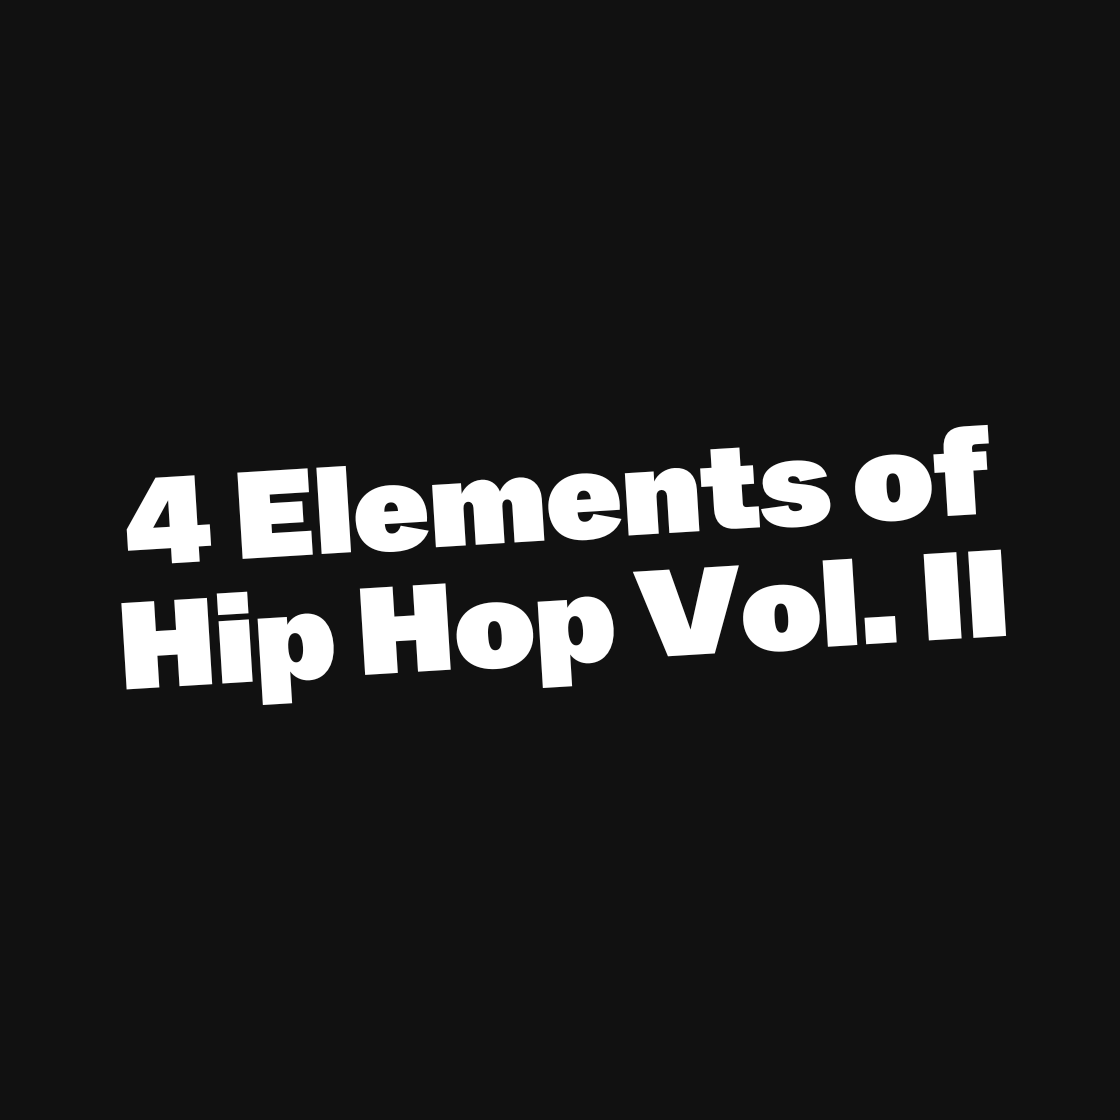 4 Elements of Hip Hop Vol. II